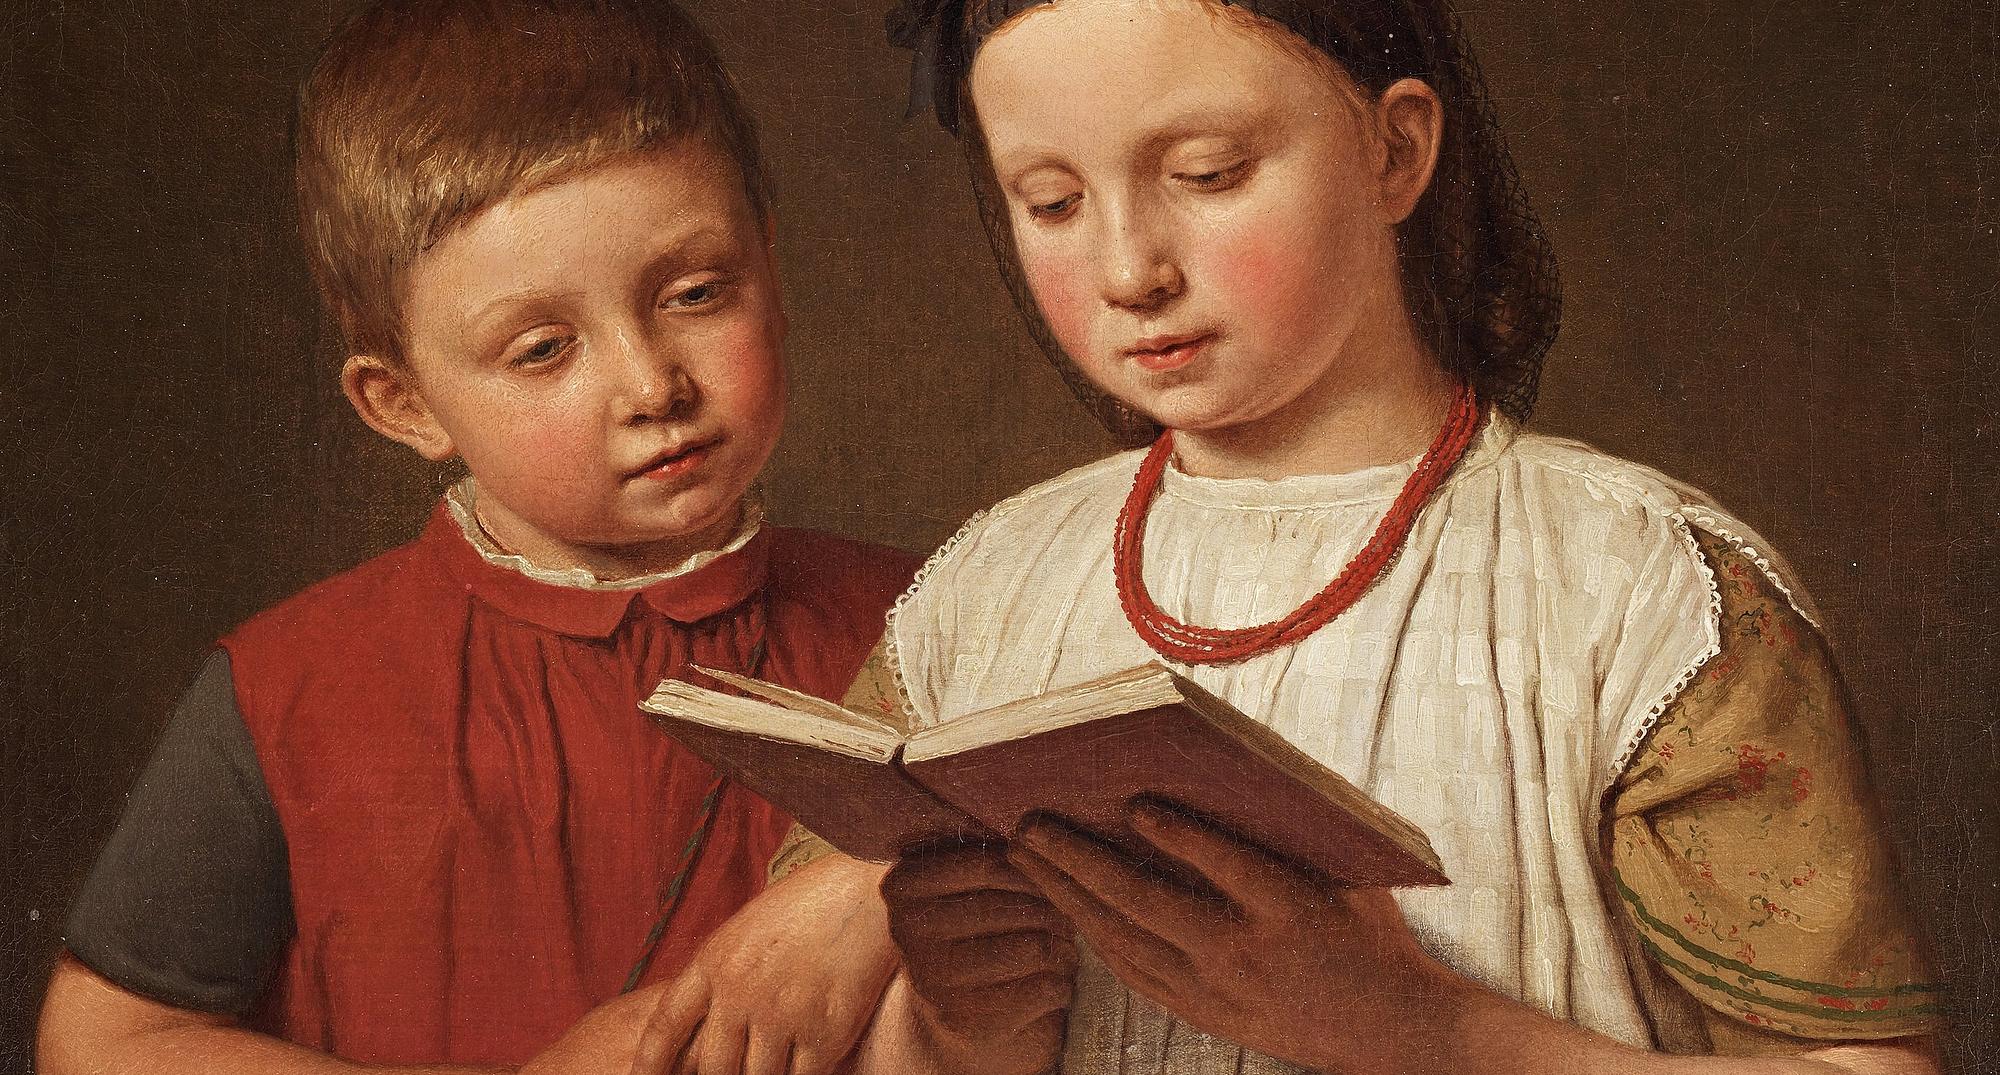 Christen Købke (1810-1848): To læsende børn. Kunstnerens søn Peter og søsterdatter Cecilie Feilberg, gift Gottlieb, 1845.
